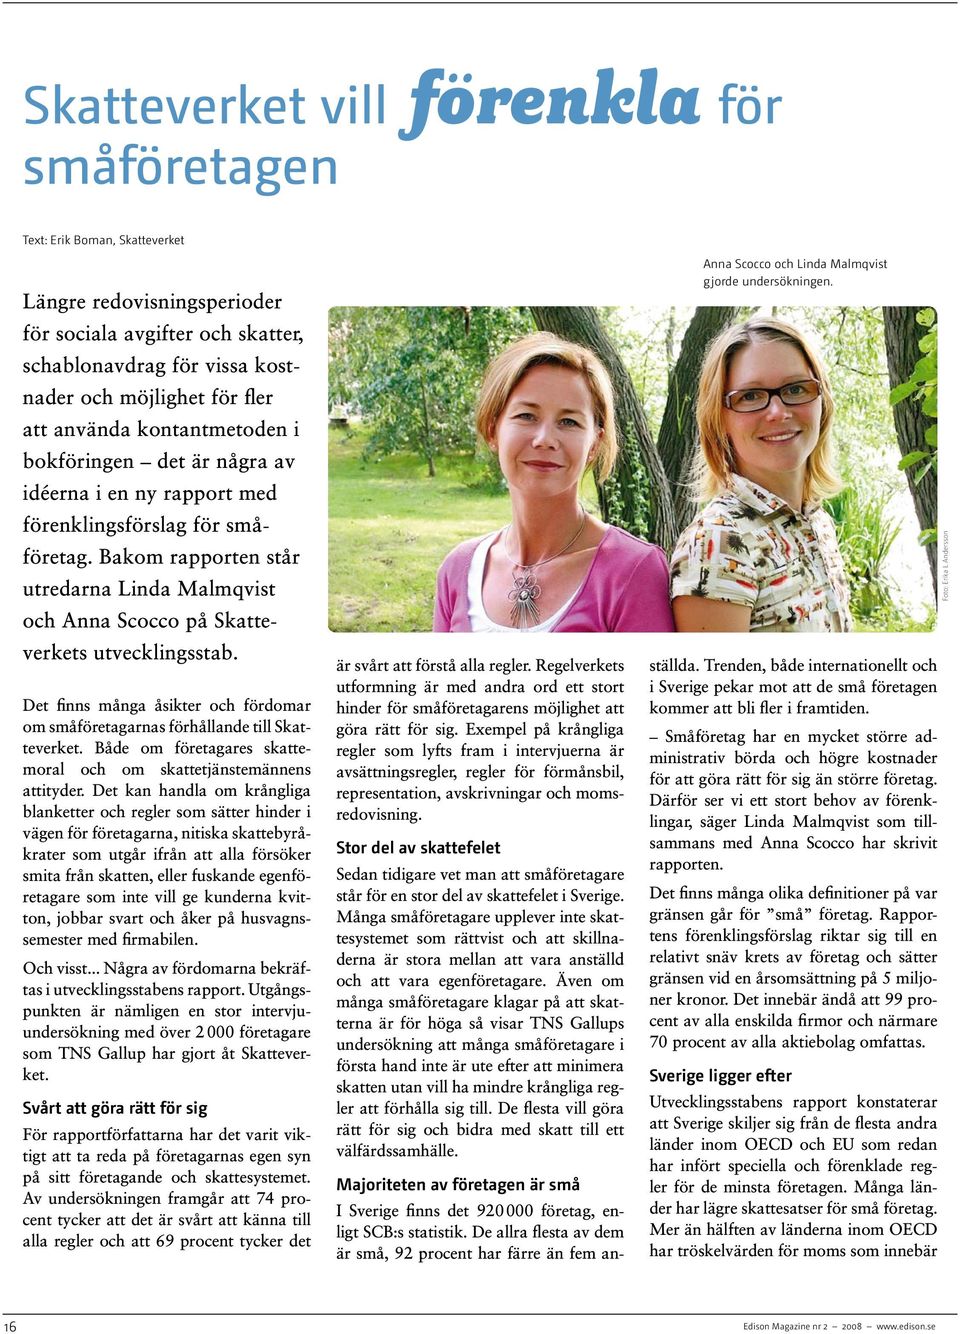 Bakom rapporten står utredarna Linda Malmqvist och Anna Scocco på Skatteverkets utvecklingsstab. Det finns många åsikter och fördomar om småföretagarnas förhållande till Skatteverket.